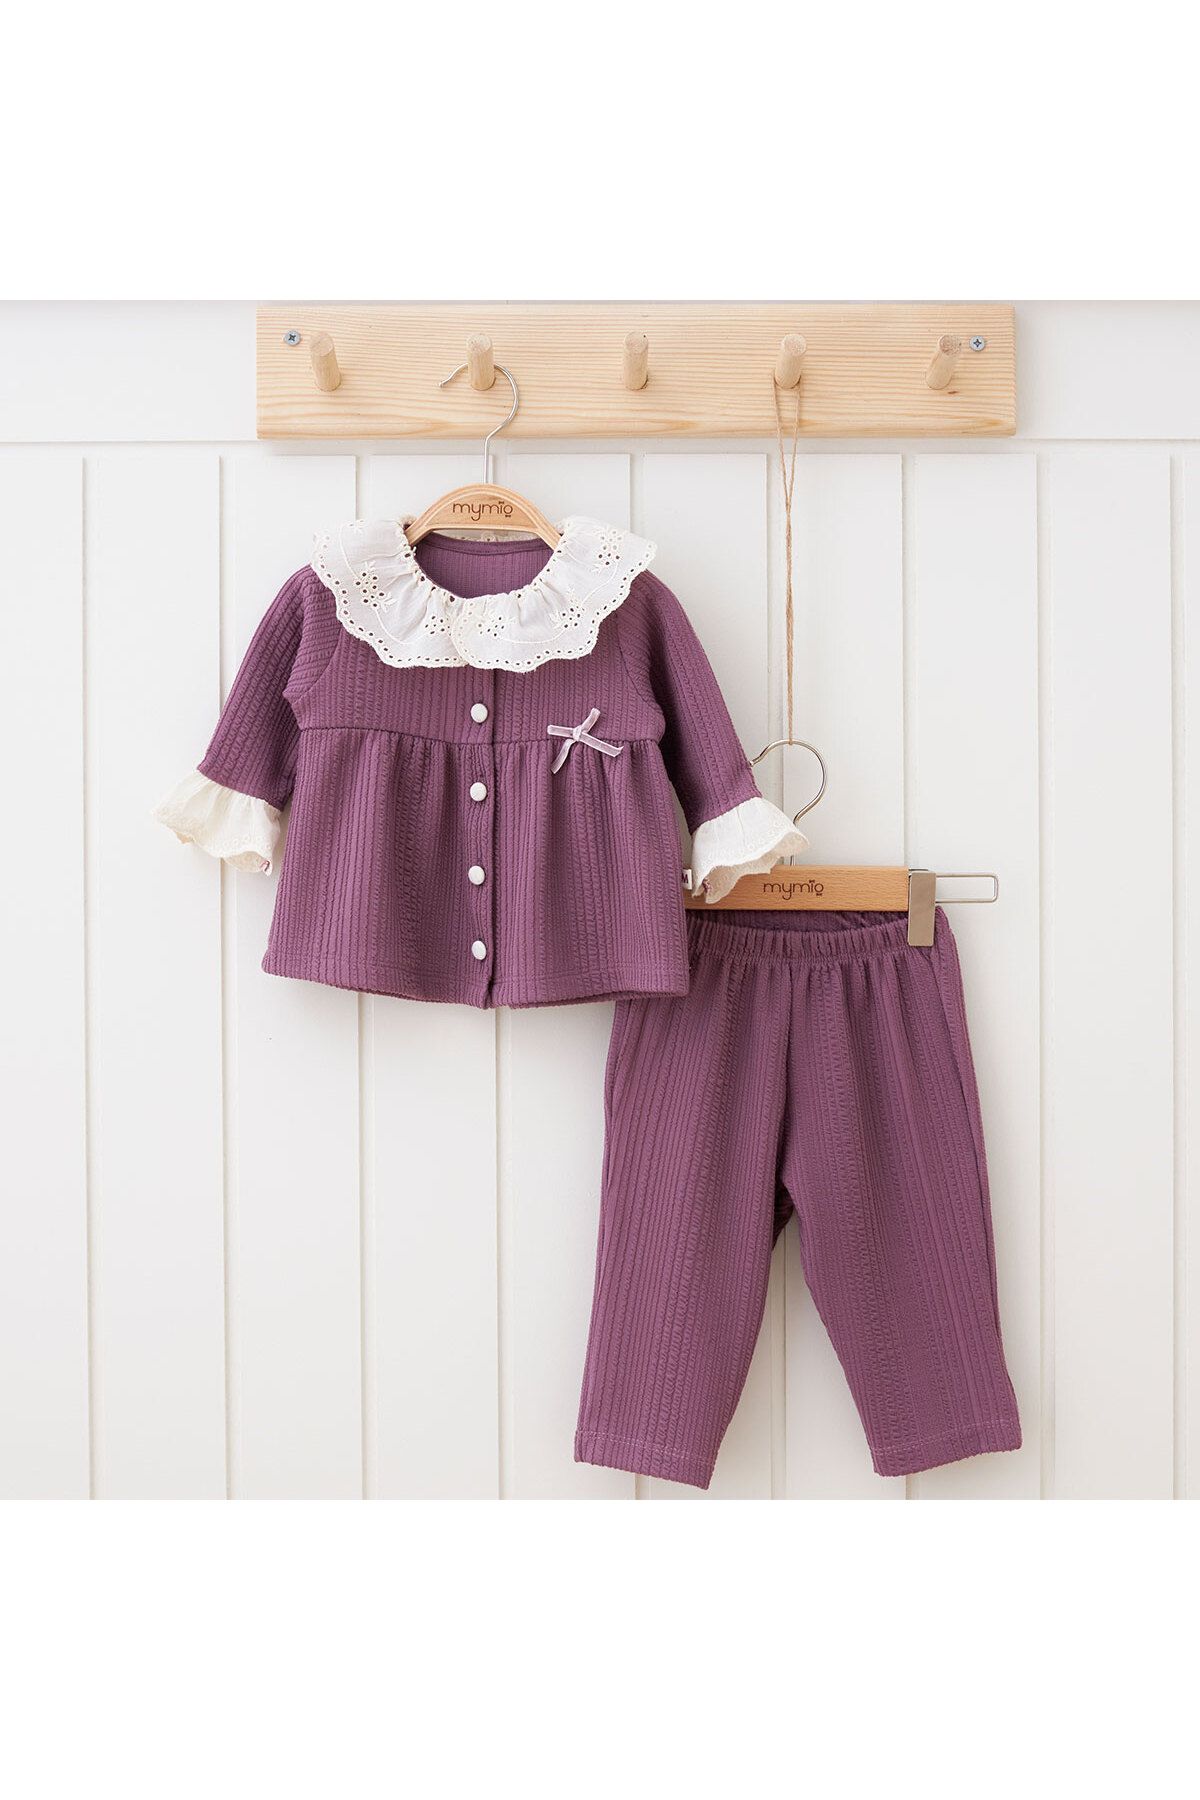 DIDuStore Kız Bebek Takım Şık Dantel Yaka Detaylı Bluz ve Pantolon Seti